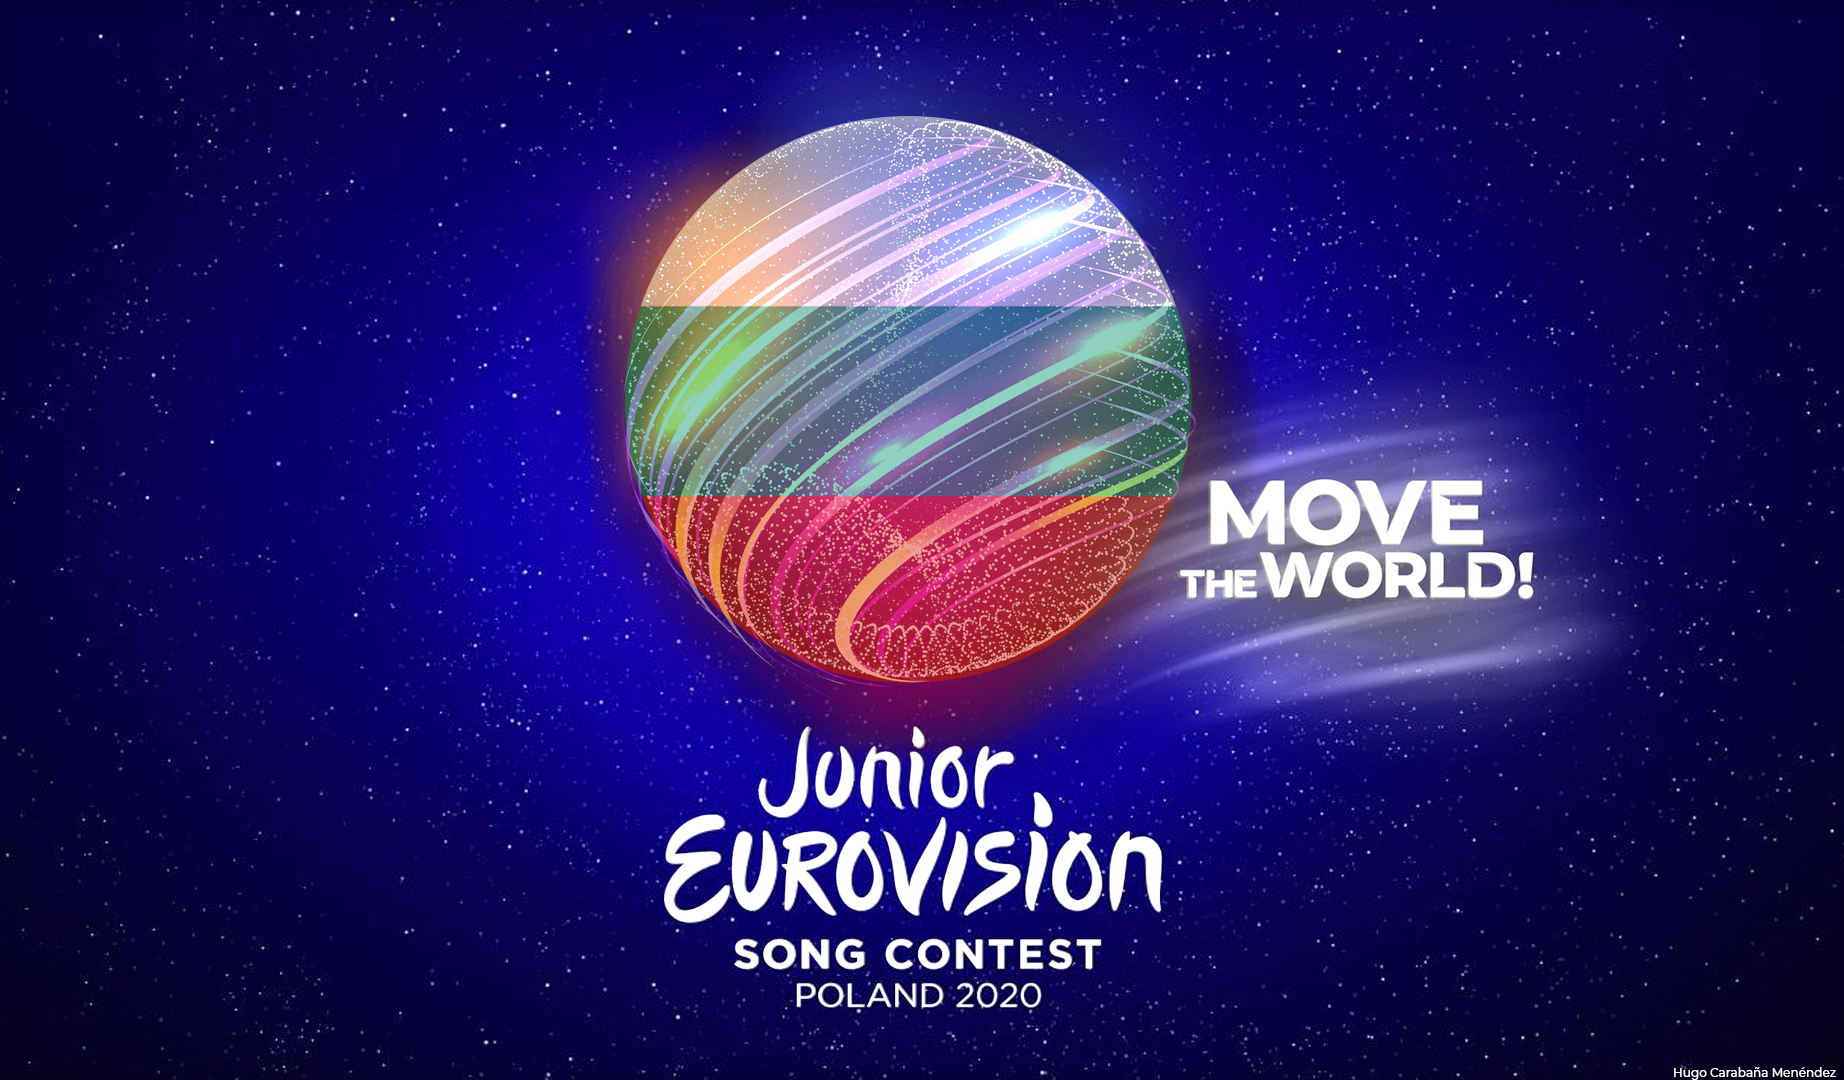 Exclusiva: La BNT búlgara espera poder retomar su participación regular en Eurovisión Junior para la edición de 2021